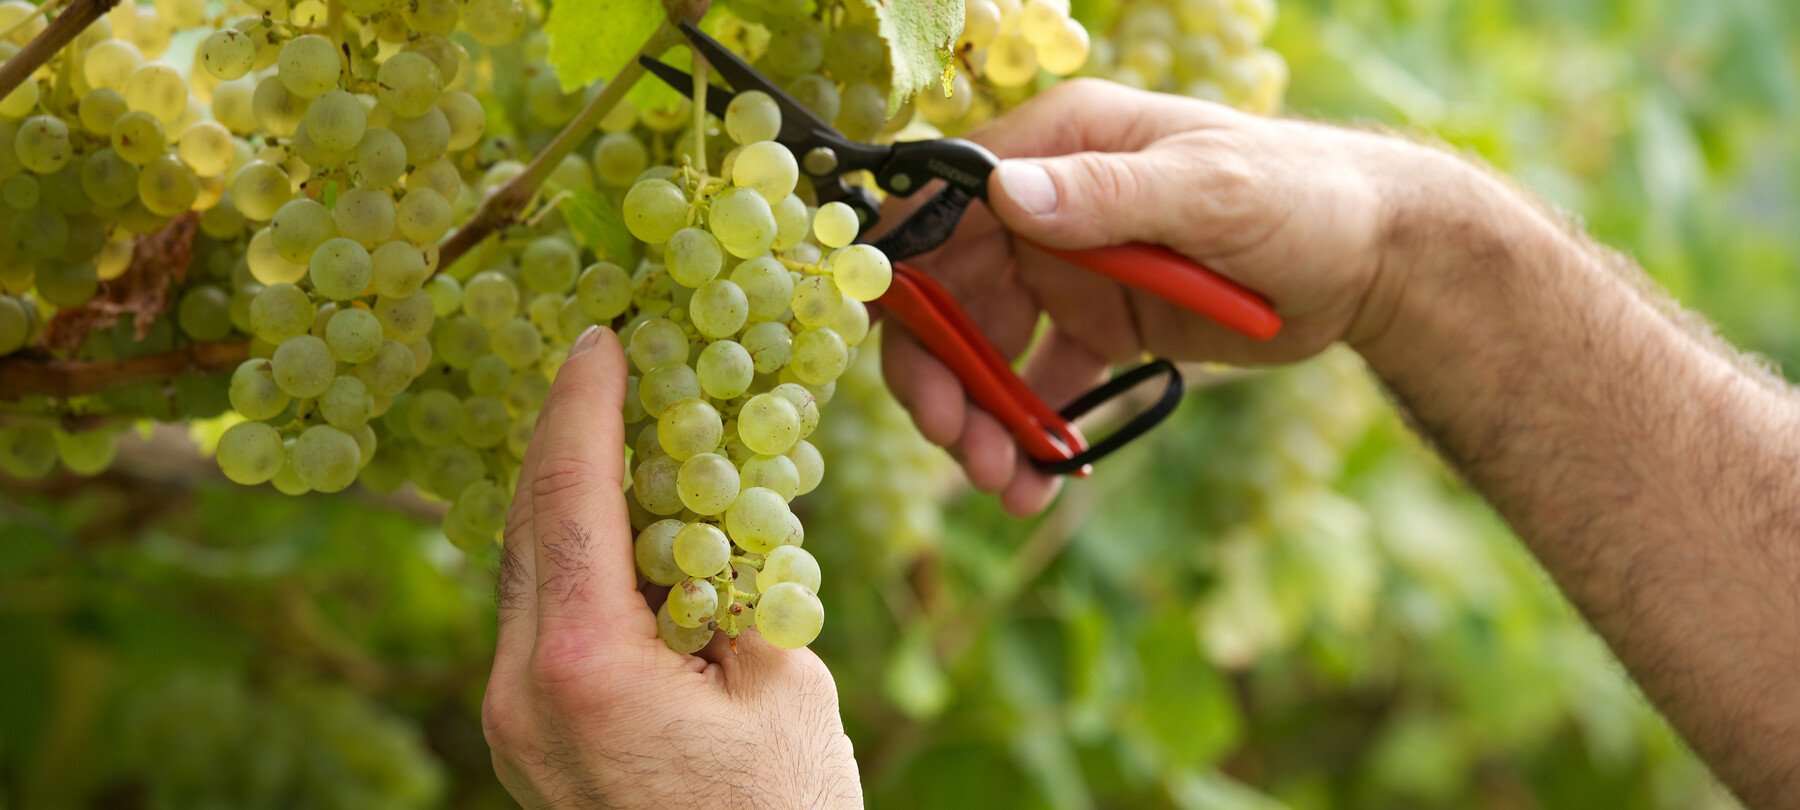 Growing resistant grapevine varieties in Trentino